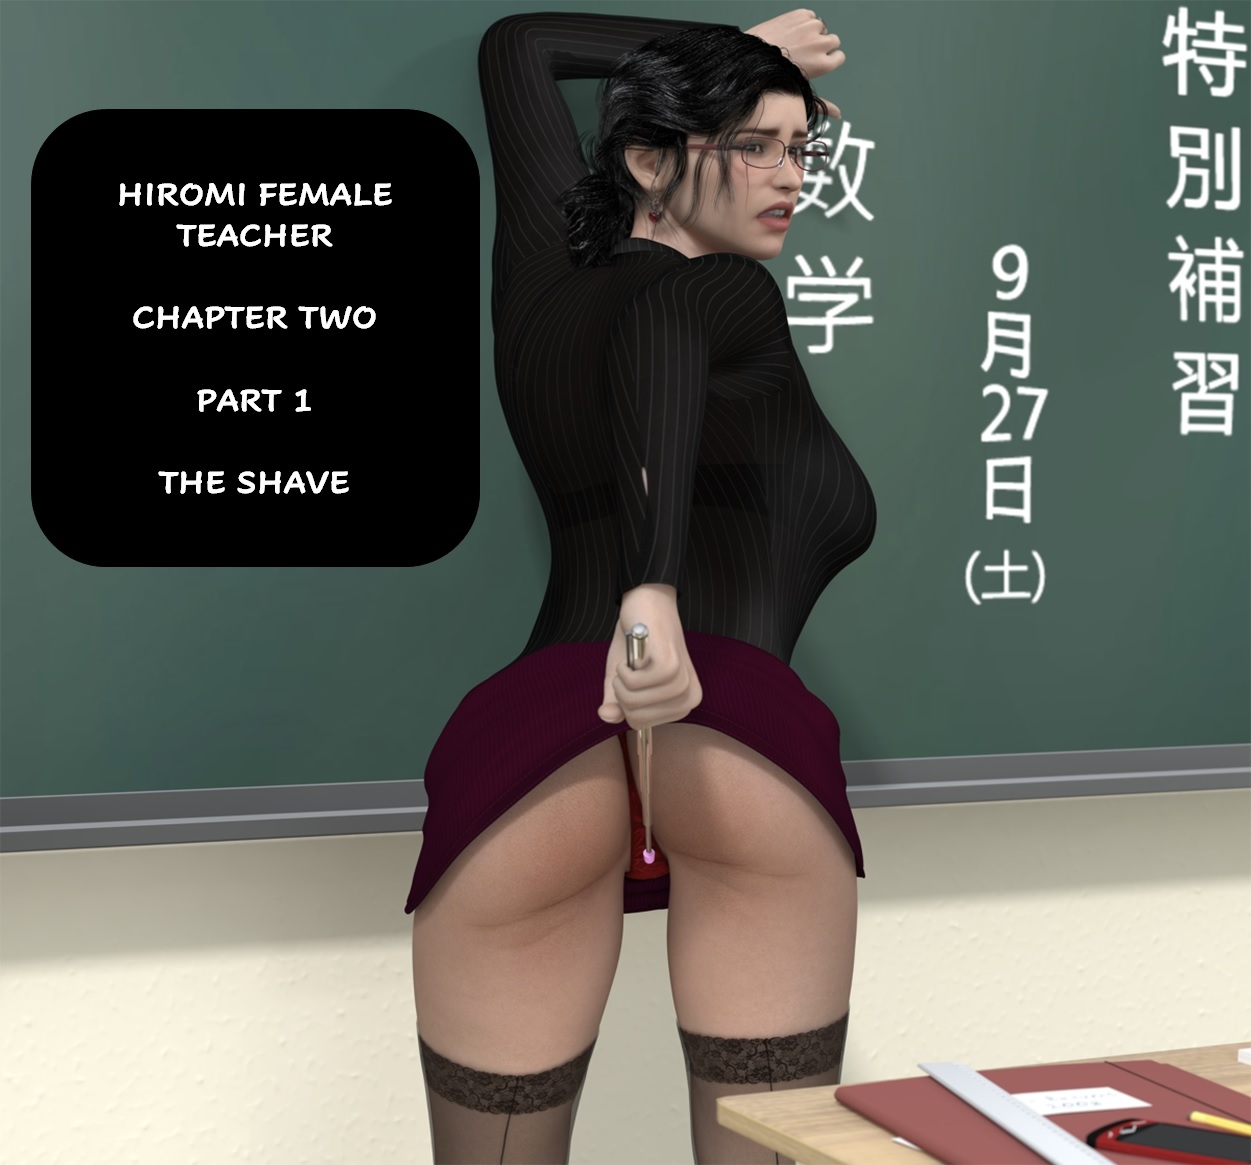 Teacher Comics - Hiromi Female Teacher 2 - story by JDS â€¢ Free Porn Comics